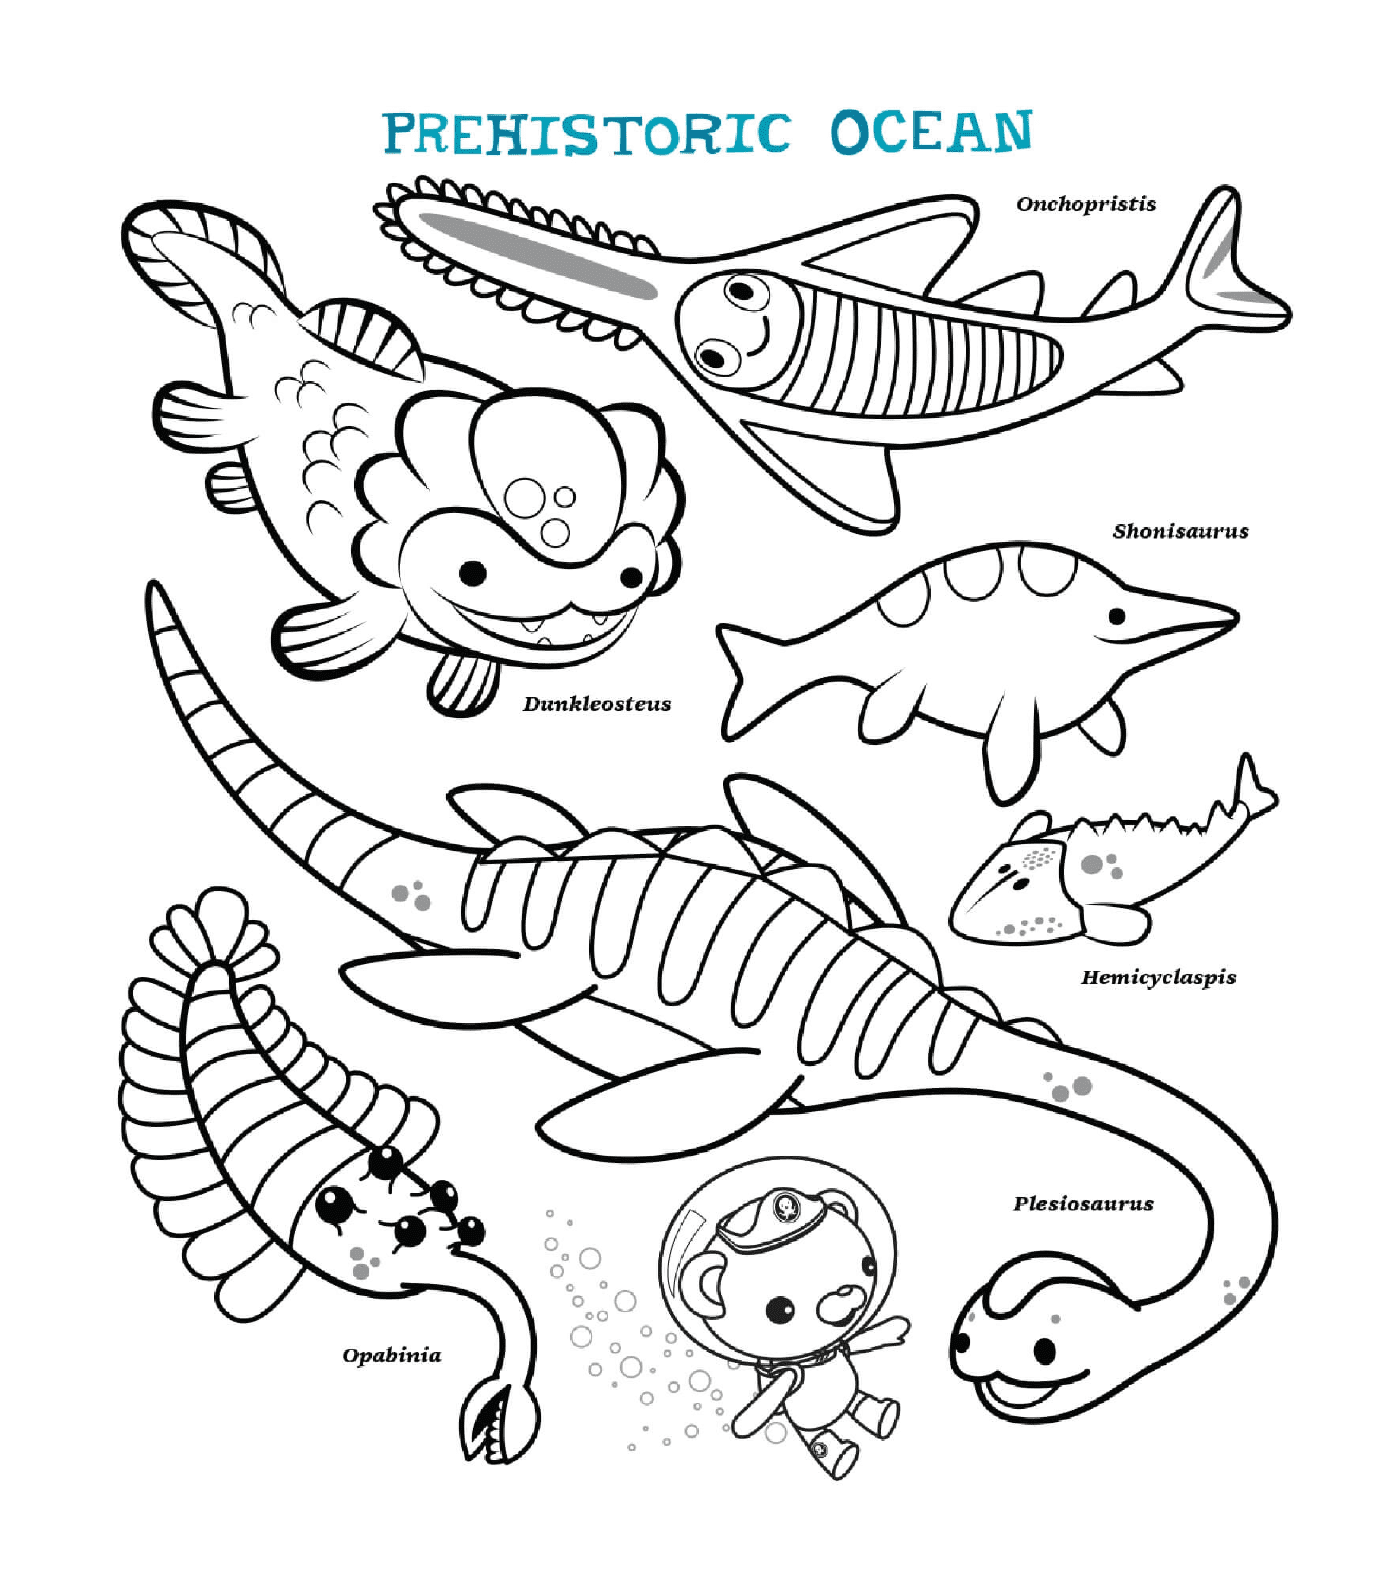  Océano Prehistórico, un encuentro con criaturas marinas 